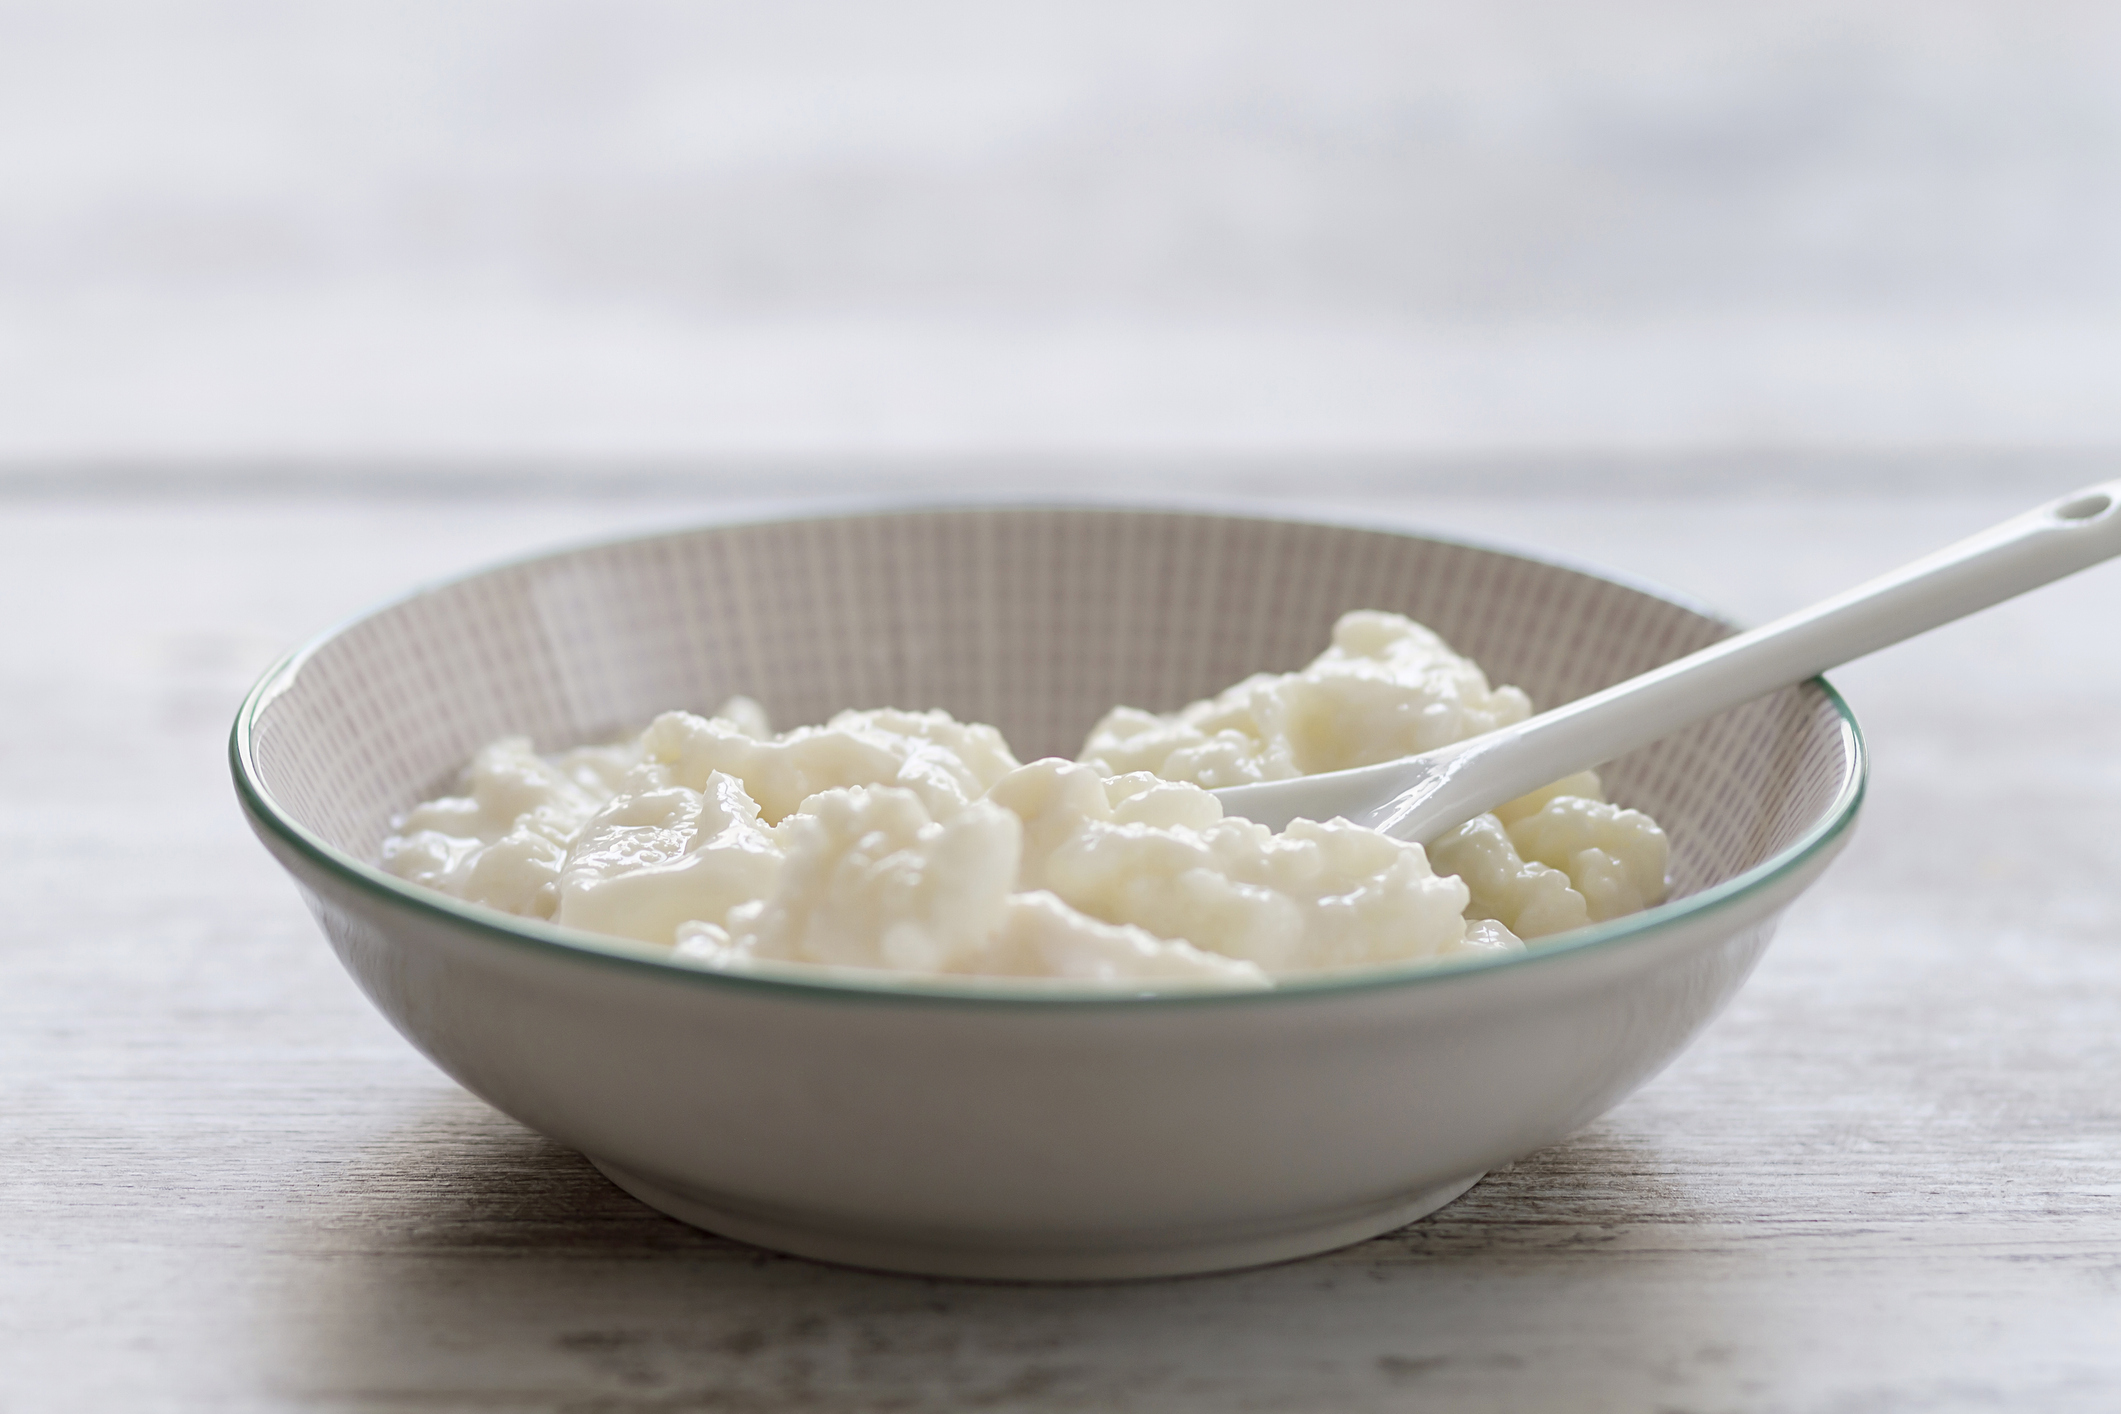 Le kéfir de lait est une soource très intéressante de calcium et de probiotiques. Getty image